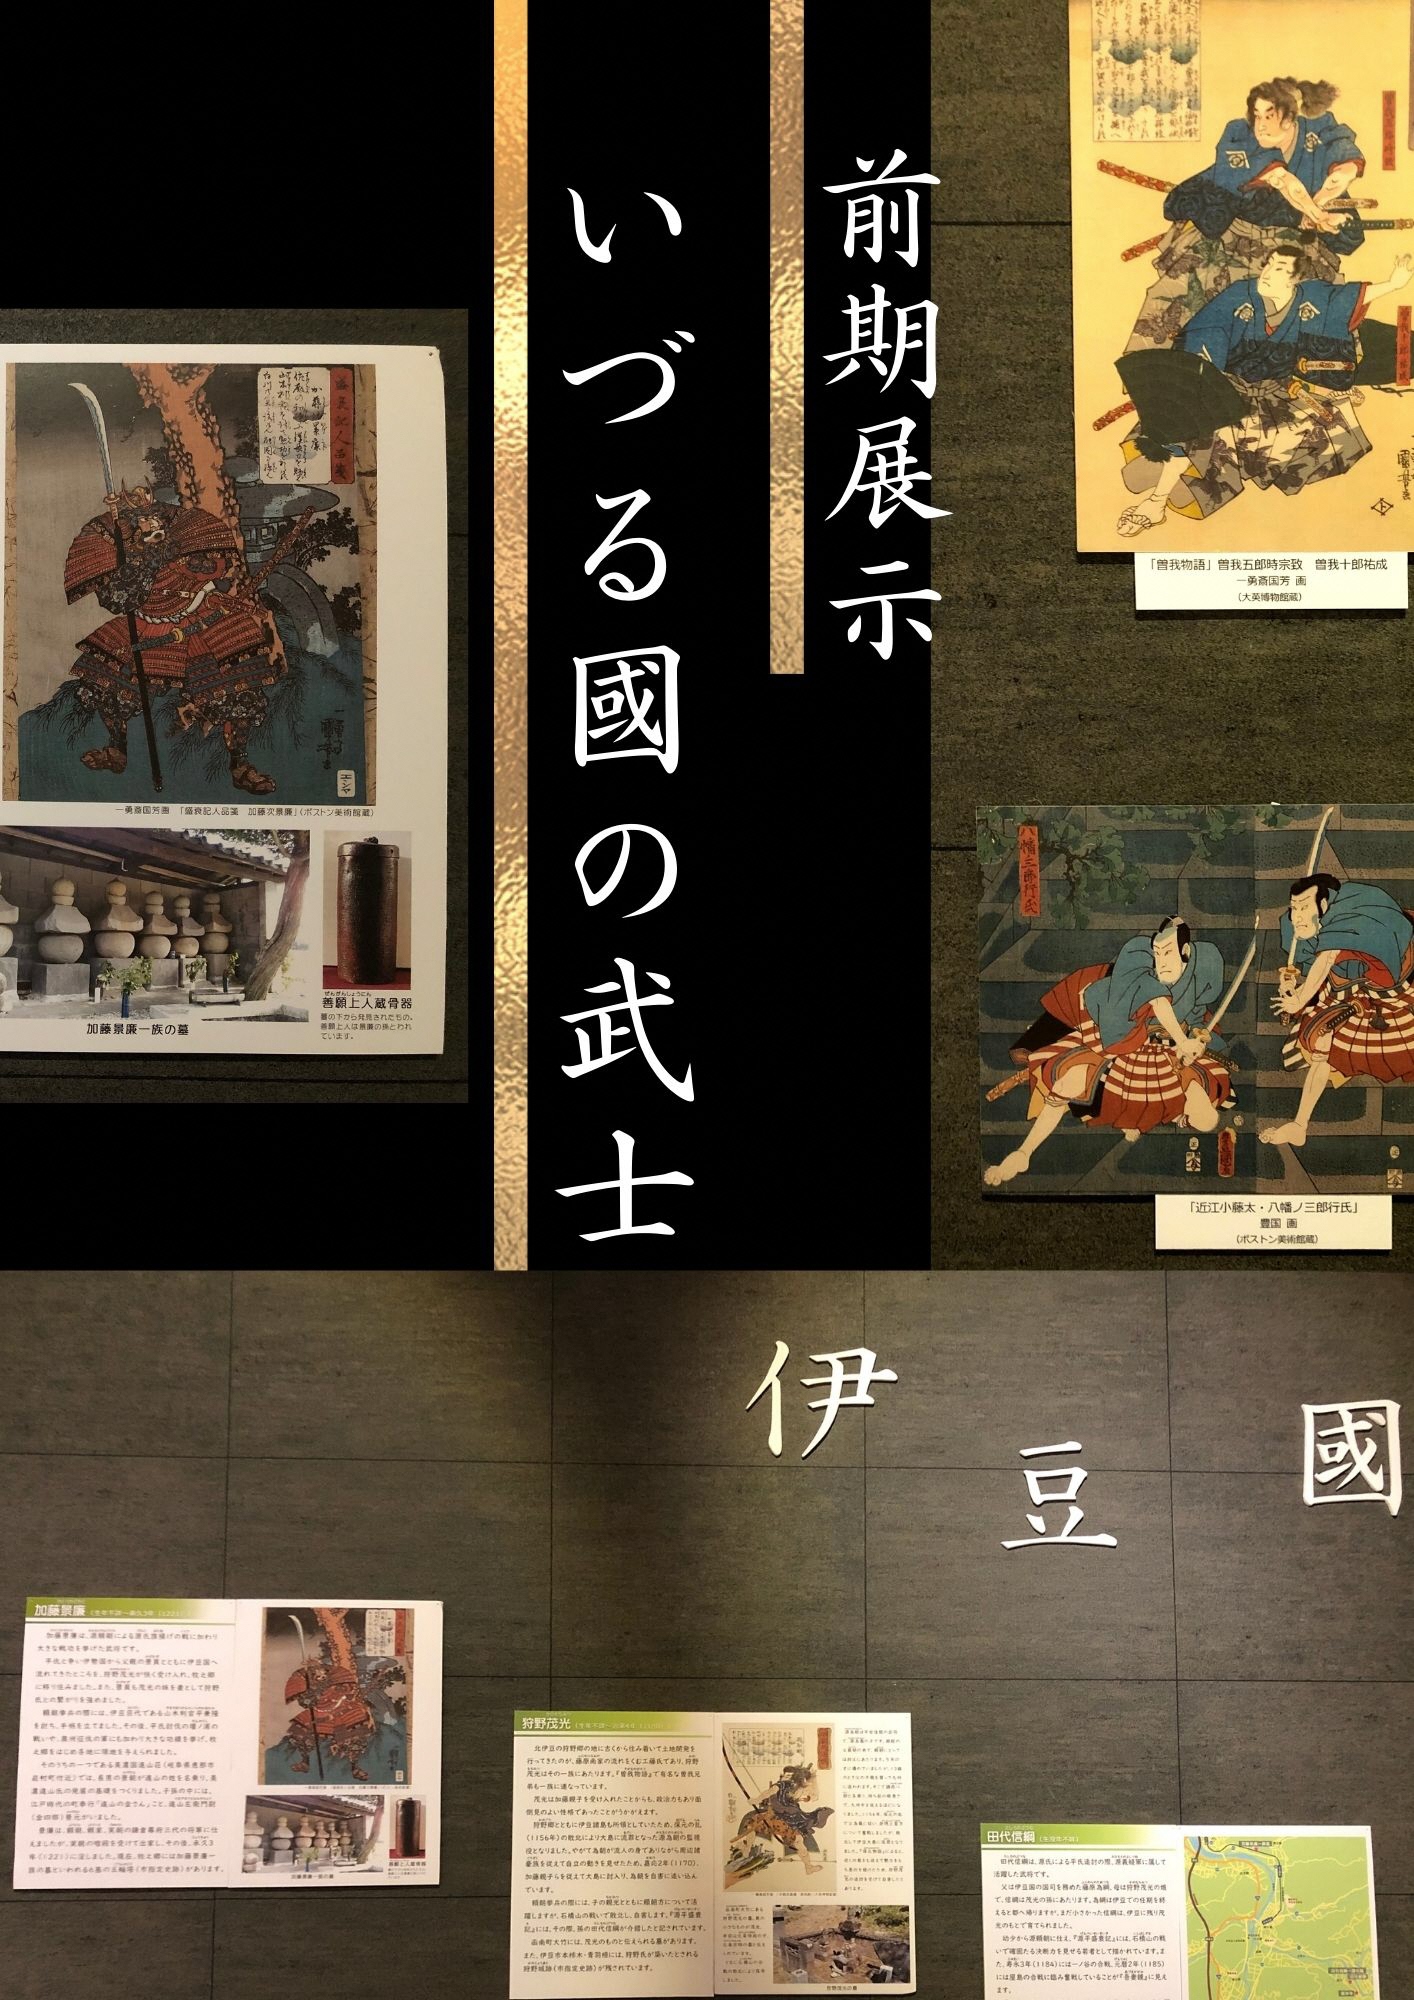 前期展示「いづる國の武士」の数点の絵や資料などの展示品のポスター